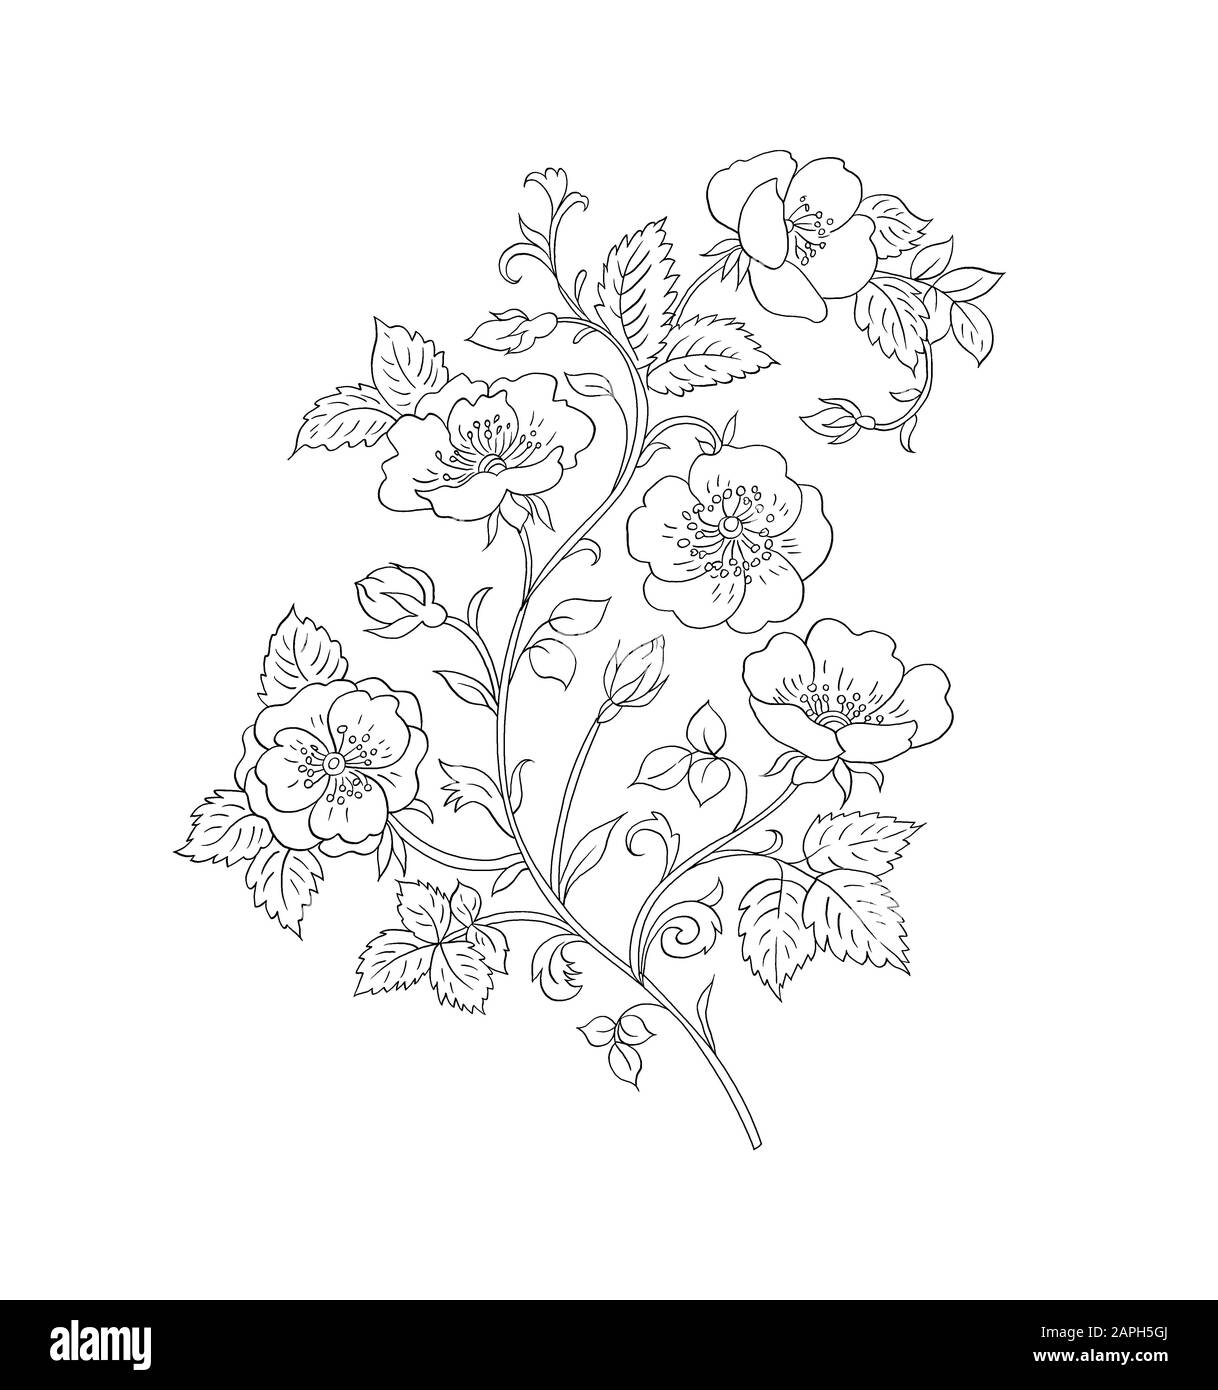 Flower motif sketch for design Royalty Free Vector Image